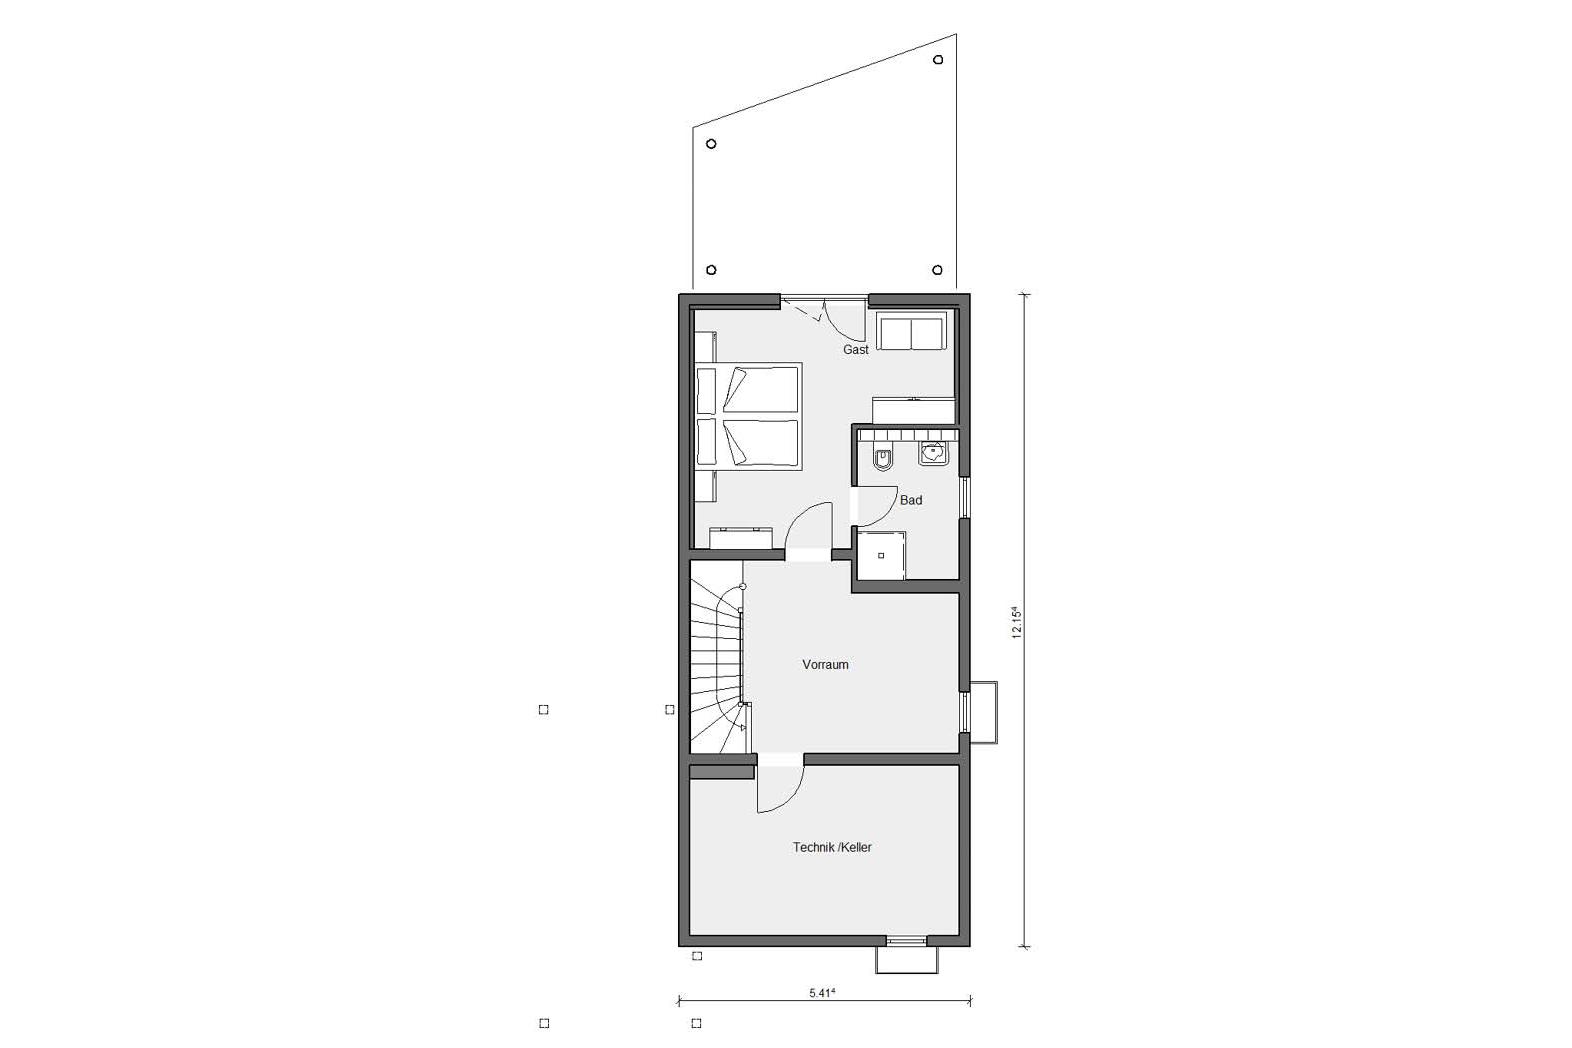 Floor plan basement E 15-150.2 narrow house concept